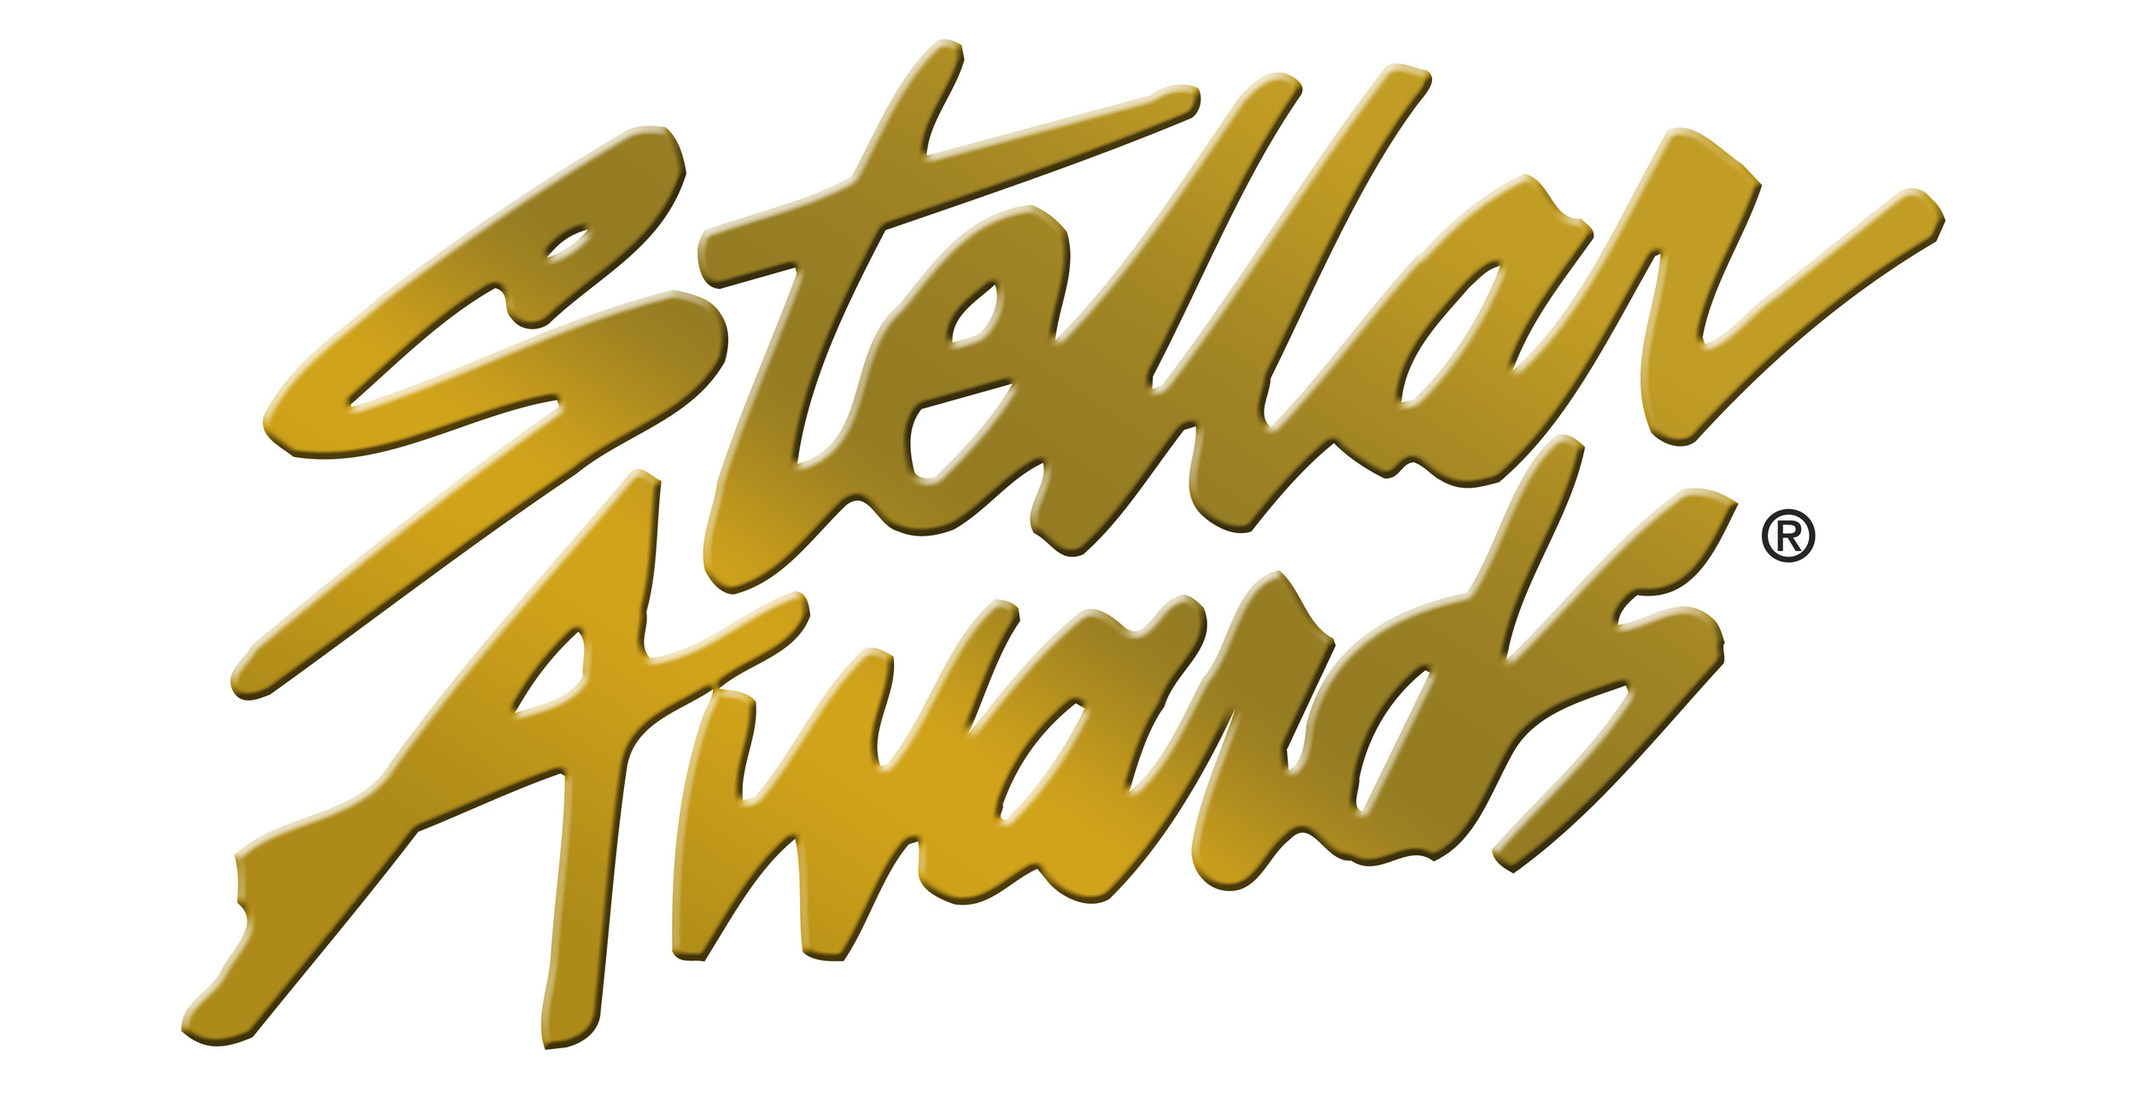 Stellar Award